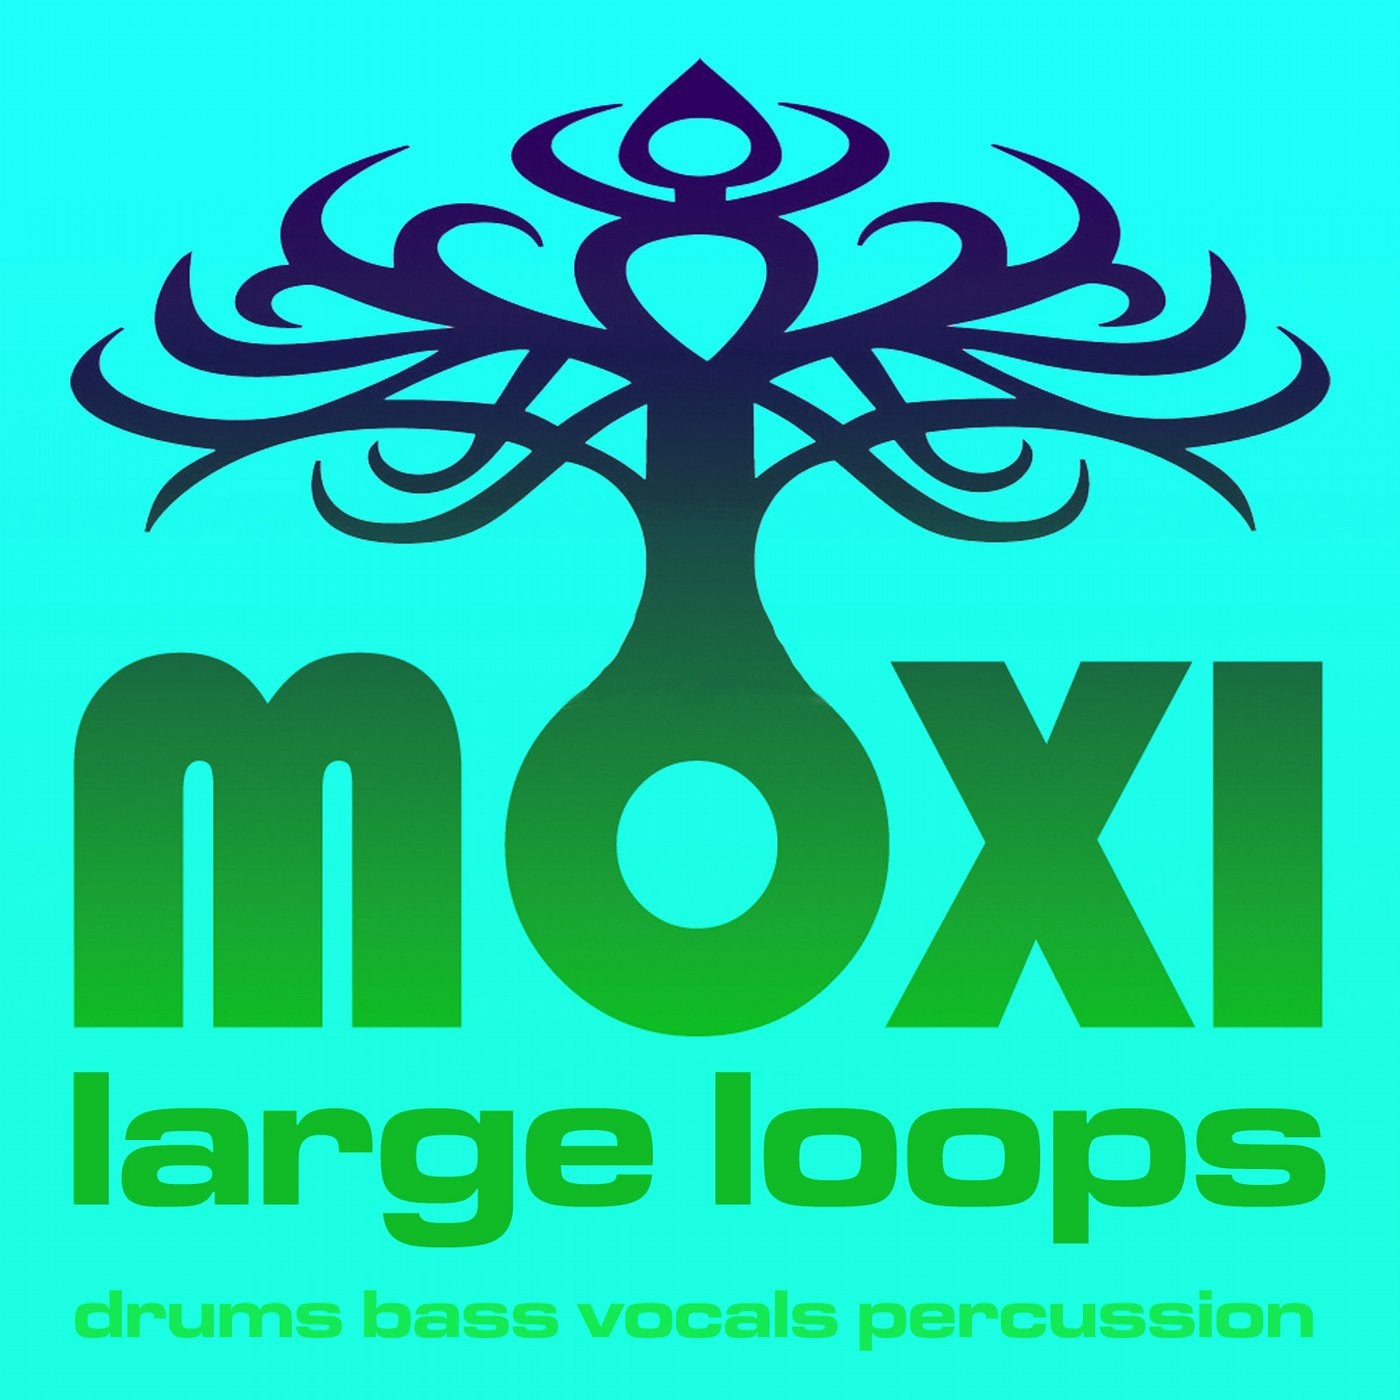 Vortex Loopy Loops Volume 13